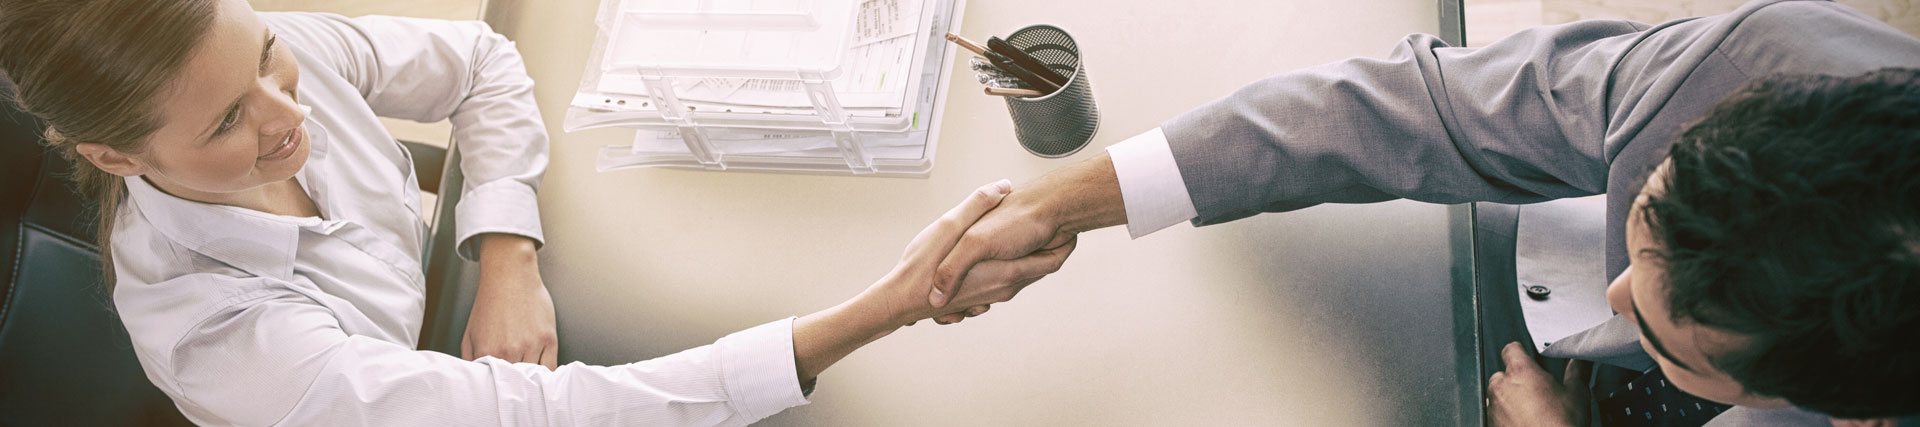 Banner Business Handshake von Geschäftspartnern